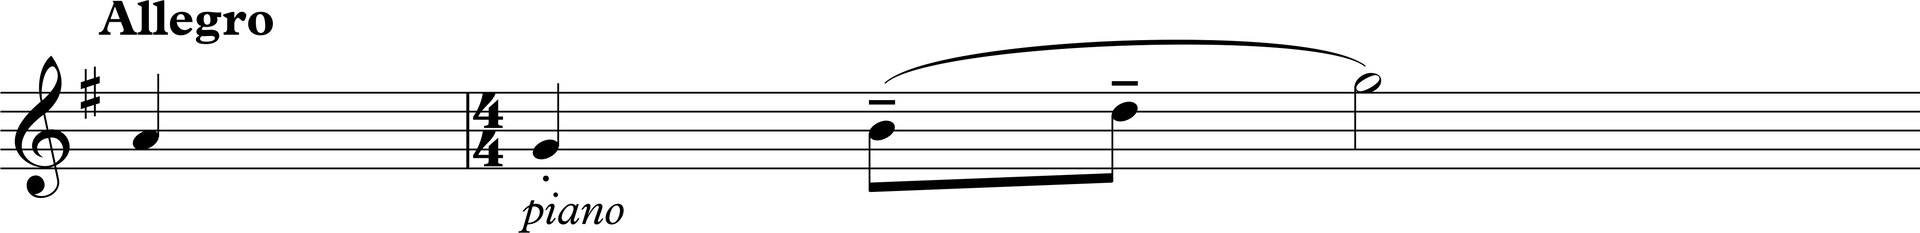 Ilustracja przedstawia pięciolinię z zapisem nutowym, nad którą widnieje duży napis „Allegro”, natomiast pod nią mniejszy napis „piano”. 